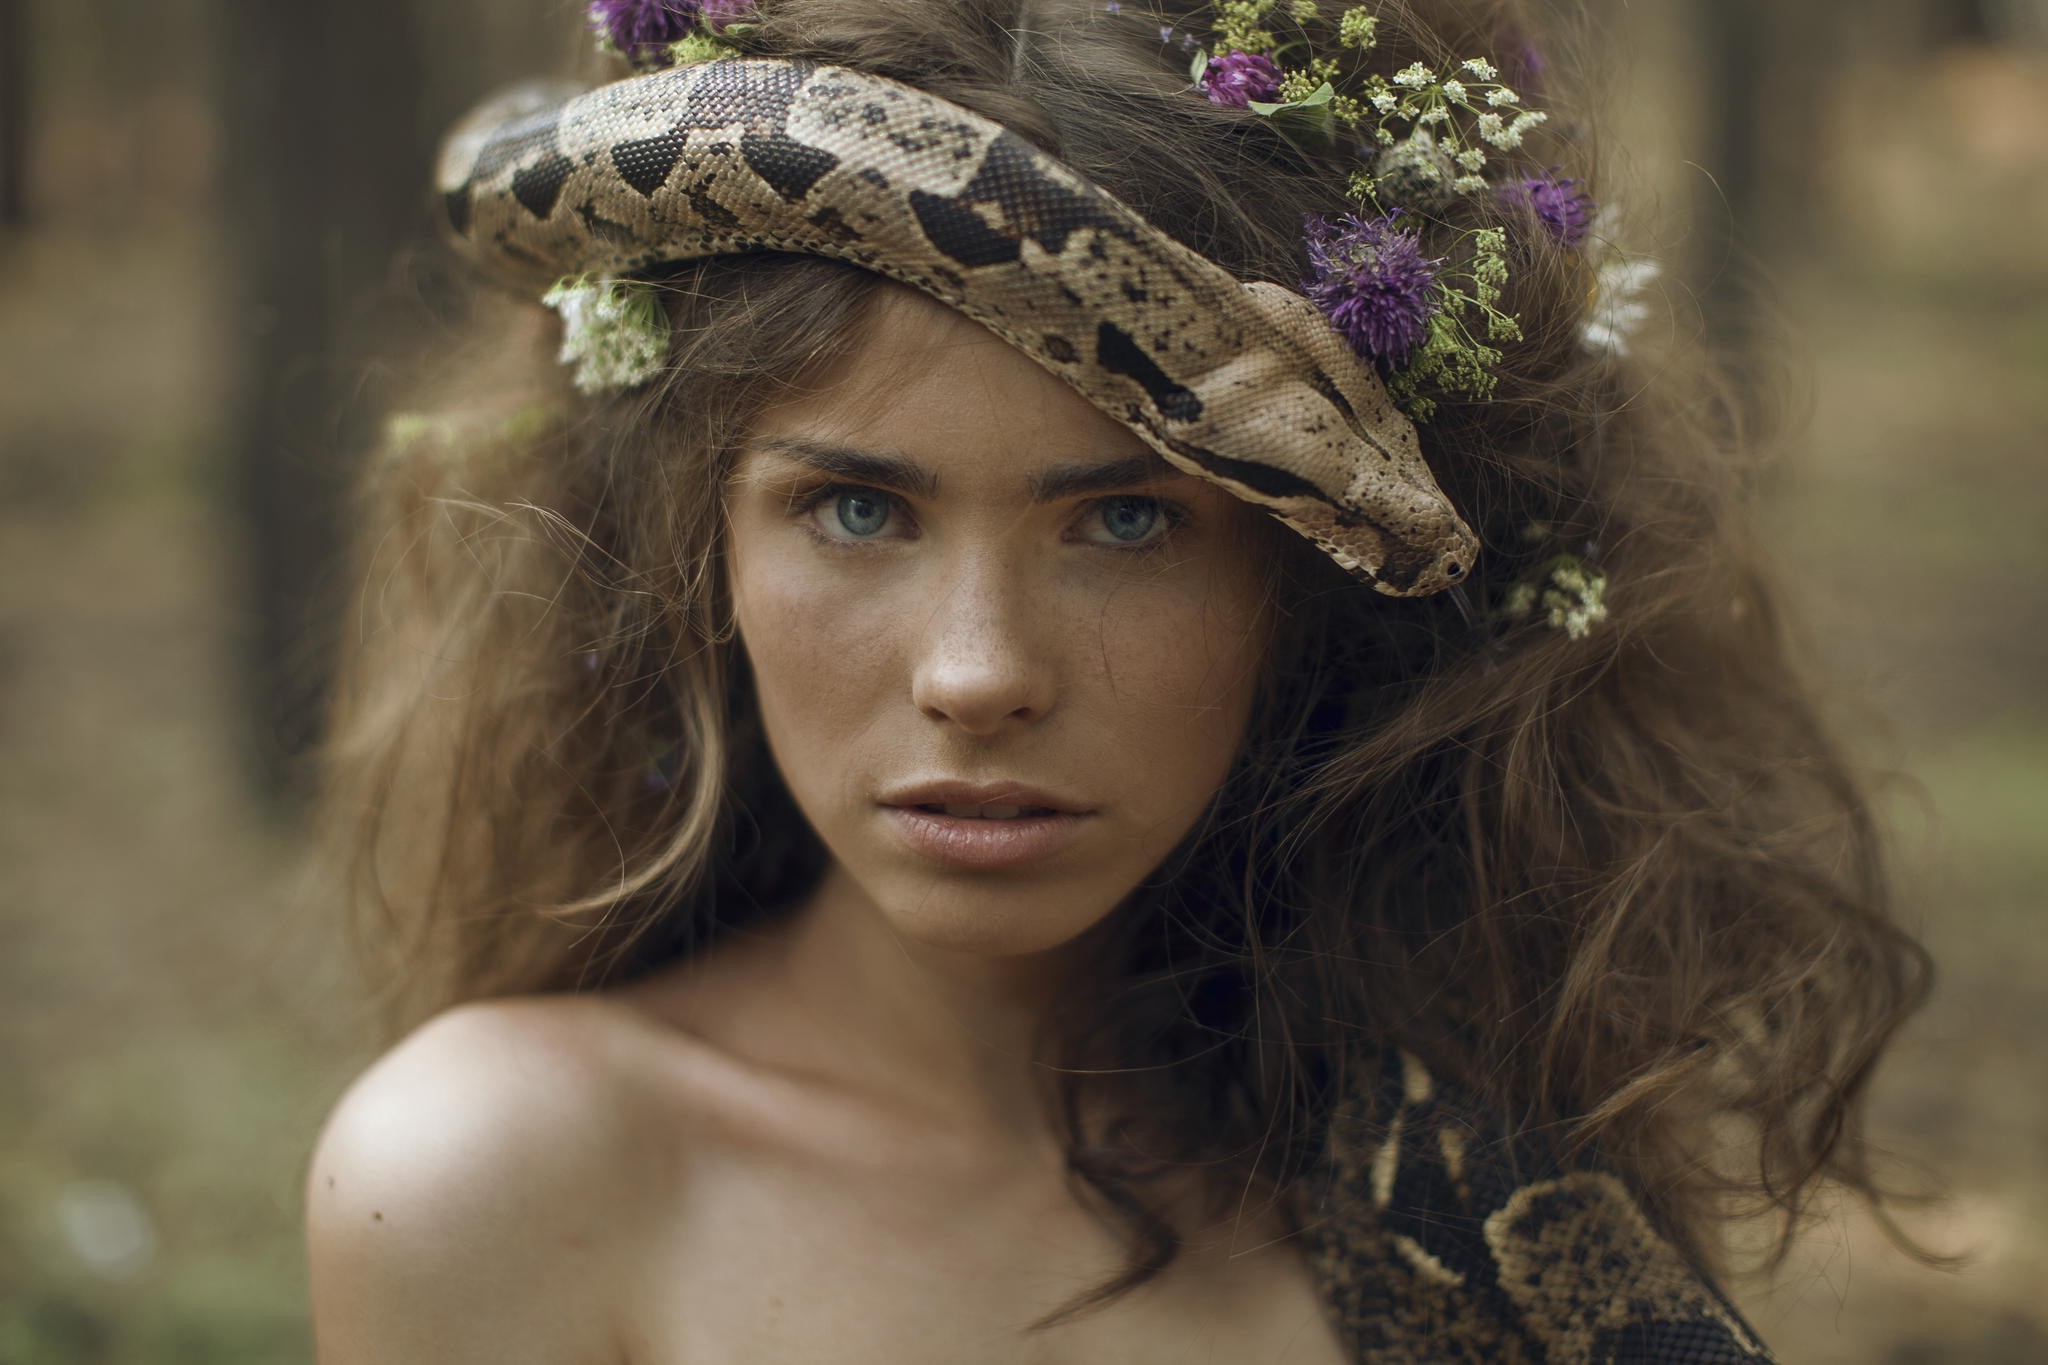 women, Auburn Hair, Blue Eyes, Freckles, Bare Shoulders, Face, Animals, Snake, Flower In Hair Wallpaper